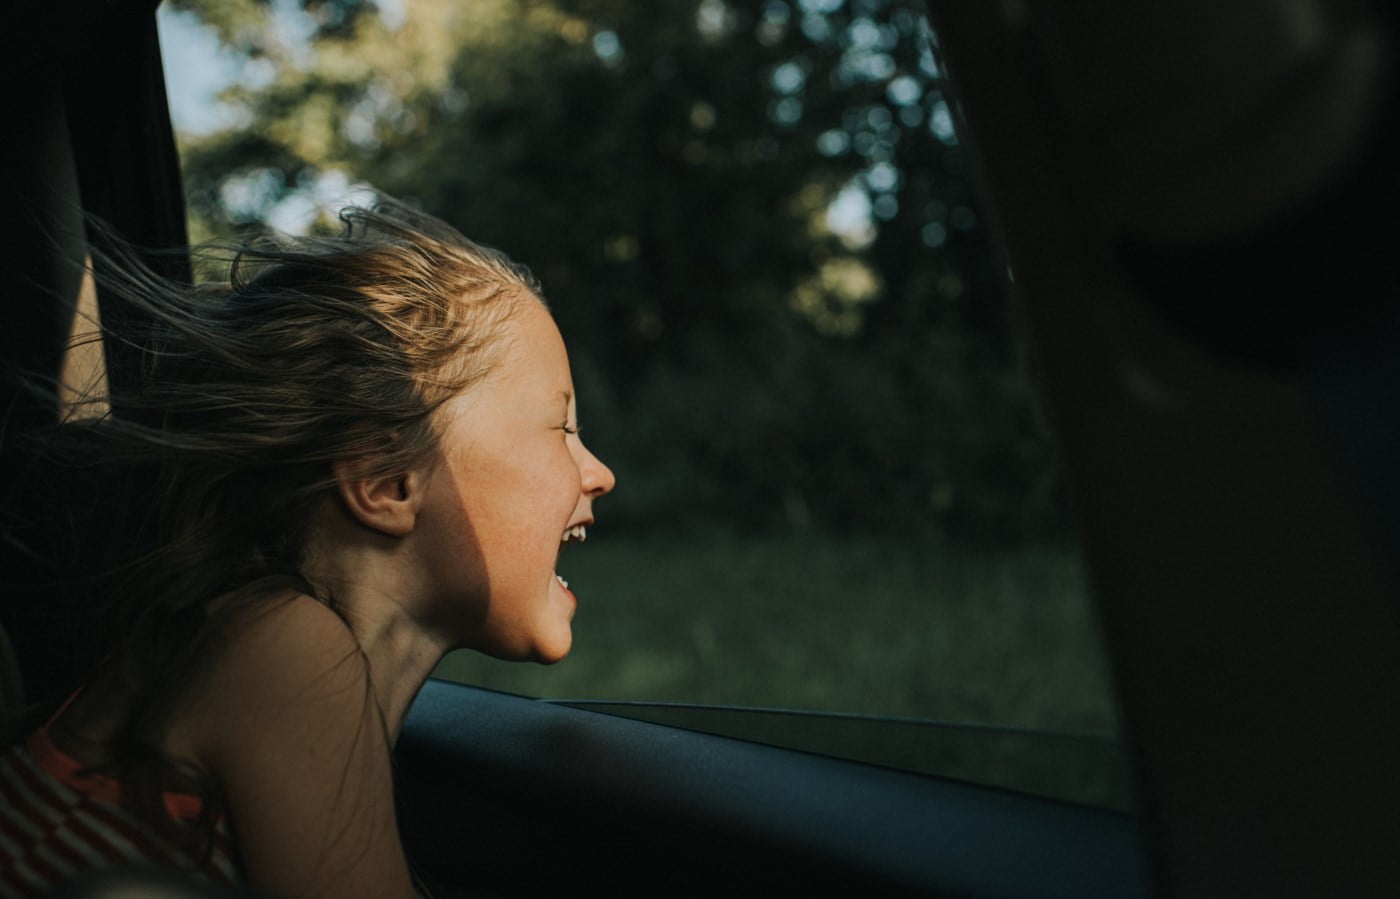 Liten jente smiler mens hun peker ansiktet ut av et bilvindu